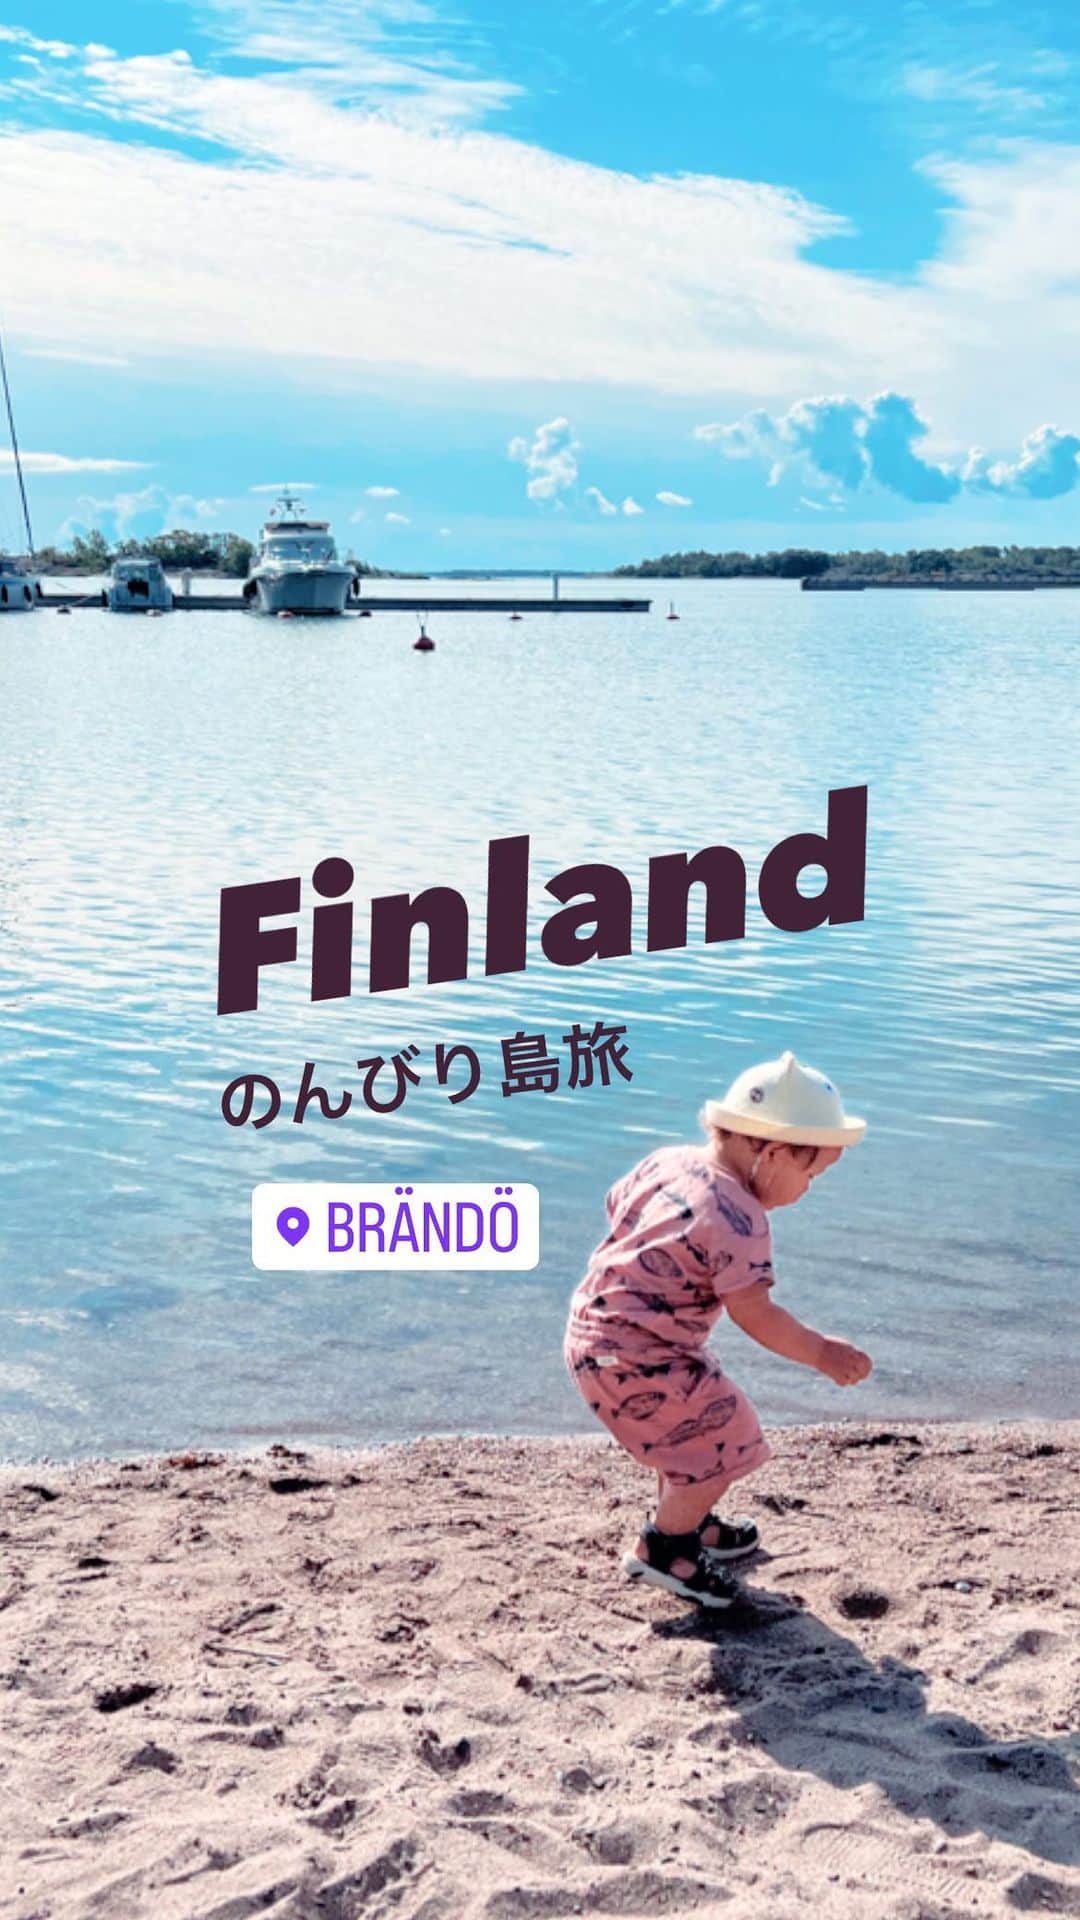 スオミの旦那と一生一笑のインスタグラム：「皆さまお久しぶりです。 この夏、久しぶりに家族旅行へ行きました🚗  今回はTurkuから車を走らせてKustaviという街から、車ごと船に乗せて島を渡り、Brändöという小さな島に遊びに行く、島旅です！  このあたりは、美しいアーキペラゴ(多島海)で有名！たくさんの小さな島々を渡る旅行が地元民にも人気で、ここからまだ先へ船に乗って旅を続ければ、スウェーデンとフィンランドの間のオーランド諸島にも車で遊びにいけちゃいます🇫🇮  今回は、息子がまだ小さいので、アーキペラゴ旅は続けず、このBrändö島止まり！  この島に来た目的は…実は特に何もなく🤣笑笑 「行ってから考えよう」といういきあたりばったり…🚗  ペンションのようなホテルに泊まって小さな島の中をウロウロするだけで、海をぼーっと眺めたり、ほぼ誰もいないビーチでゆっくりしたり、島に唯一ひとつだけあるカフェや小さな教会を訪れたり…  どこに行っても人がめちゃくちゃ少なくて、ほぼ自然しかありませんでしたが、だからこそ家族での〜んびり気ままに満喫できました。  常に走り回る2歳の息子があちこち駆け出しても安心で、自然と自由に遊べたことがよかったです☺️私たち親も、いつもとは違う場所でリフレッシュ(笑)ぼーっとする時間、なかなかないから大事です…！  今は、仕事と育児で毎日時間に追われる日々で、ブログ活動を一時お休みする形になってしまいましたが、たまには日常投稿をリールや写真で配信したいなと思います。 また見ていただけたら嬉しいです❤️  すてきなお盆休みをお過ごしくださ〜い！！  #アーキペラゴ #フィンランド旅行 #フィンランド #2歳子育て #家族旅行 #島旅 #夏休み」